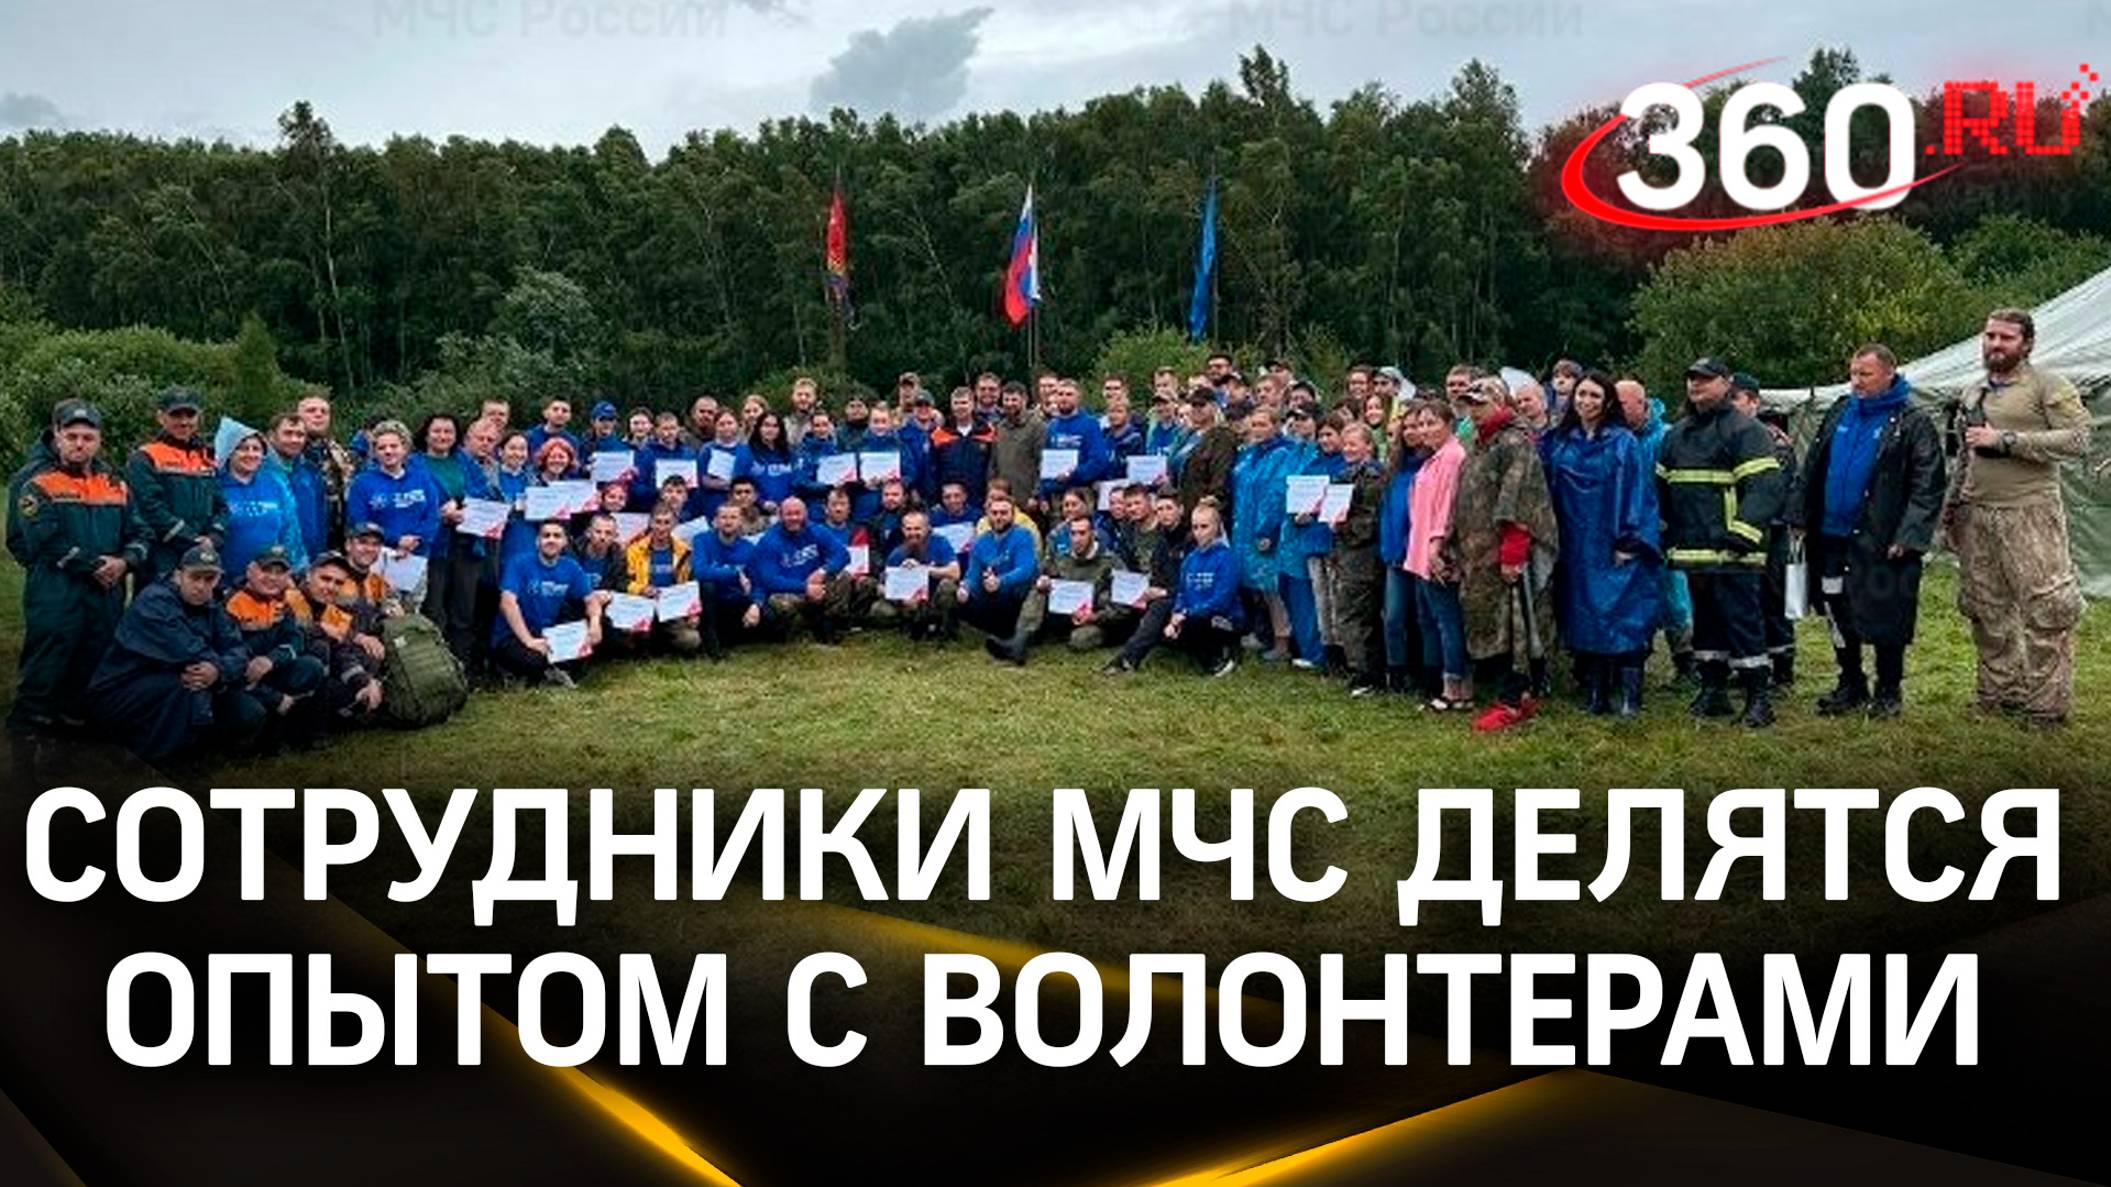 Более 100 волонтеров из 30 регионов страны, в том числе из Подмосковья приехали в Калининградскую об